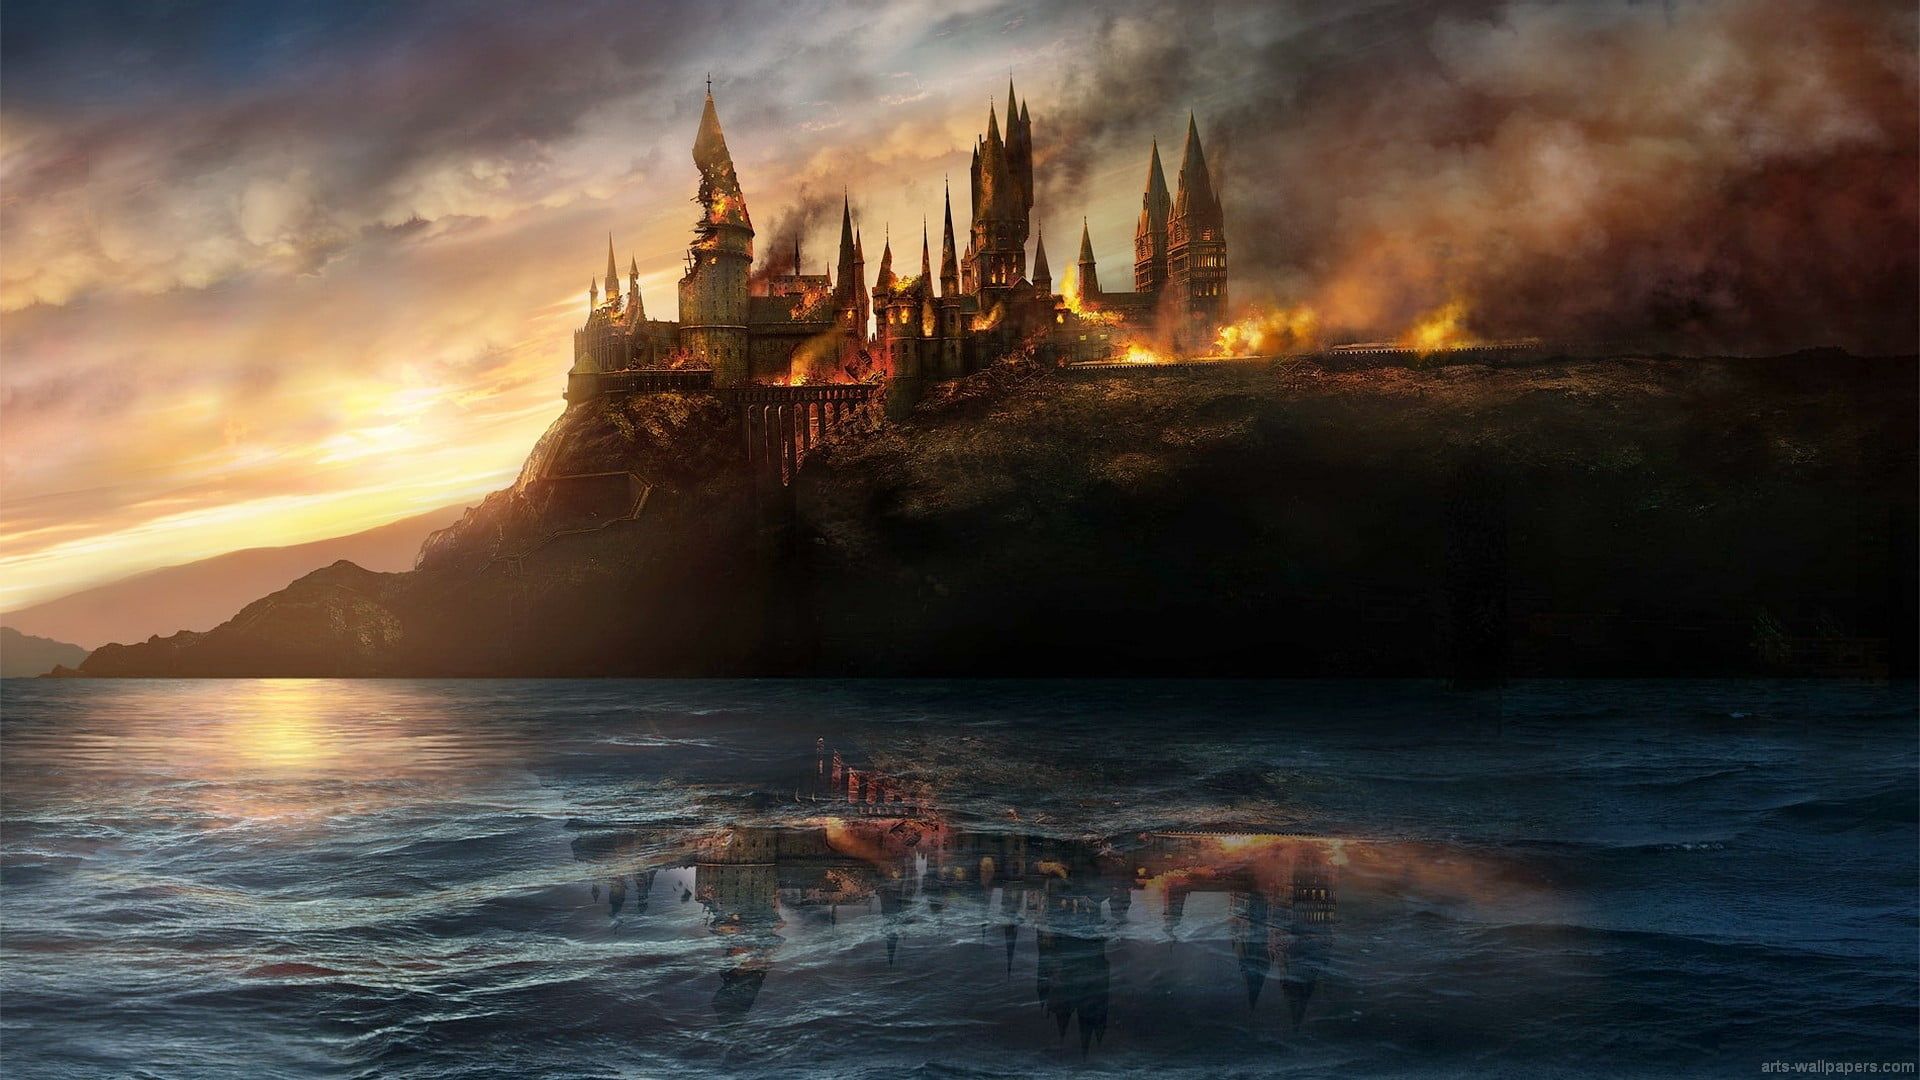 Burning Castle Wallpaper Harry Potter Hogwarts Battle At